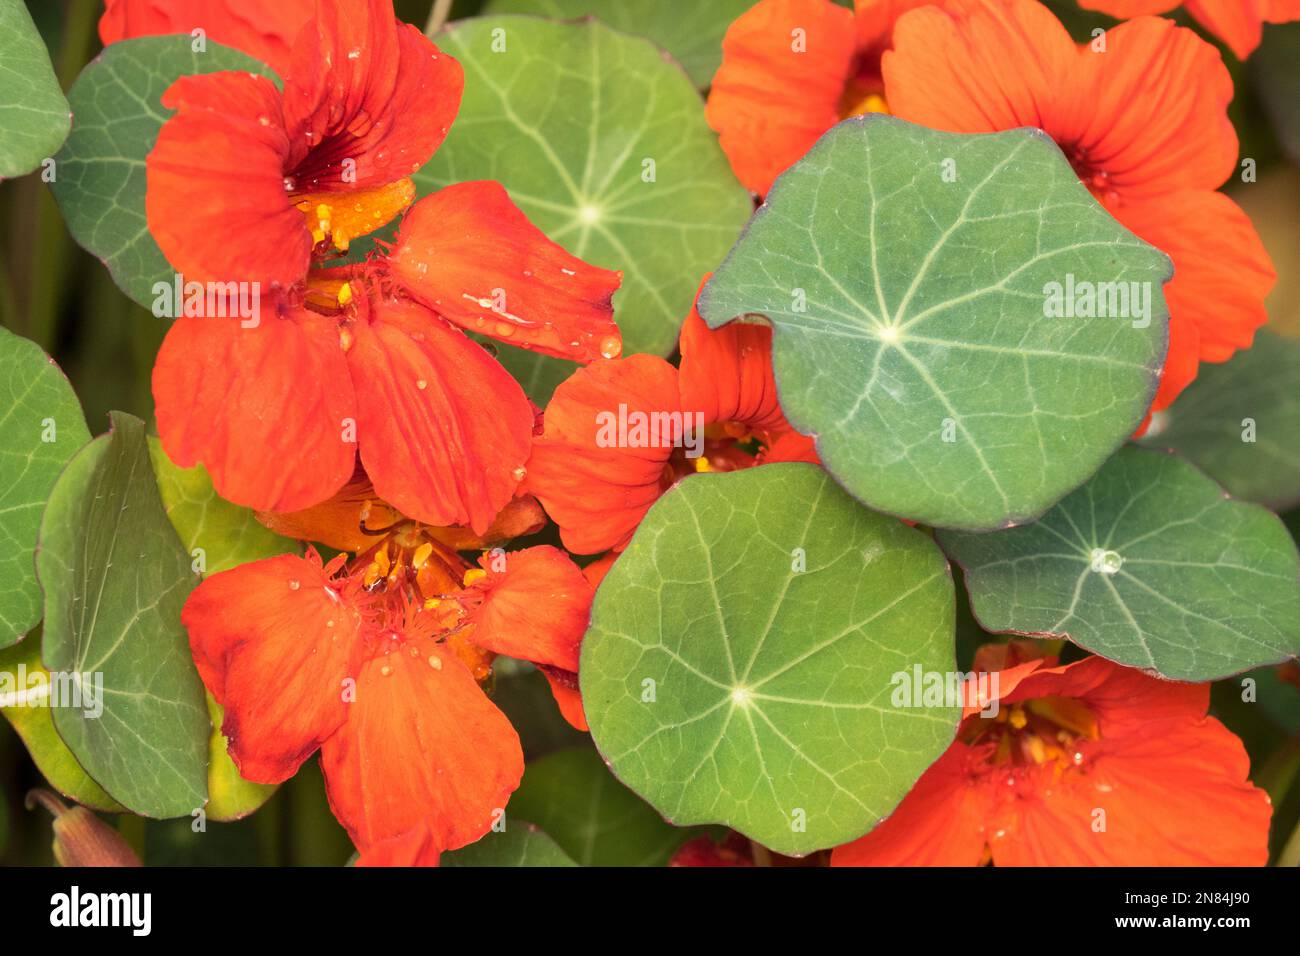 Comestibles, fleurs, feuilles, plantes comestibles, Tropaeolum majus, Naturtium, Orange, Fleur, plante Banque D'Images